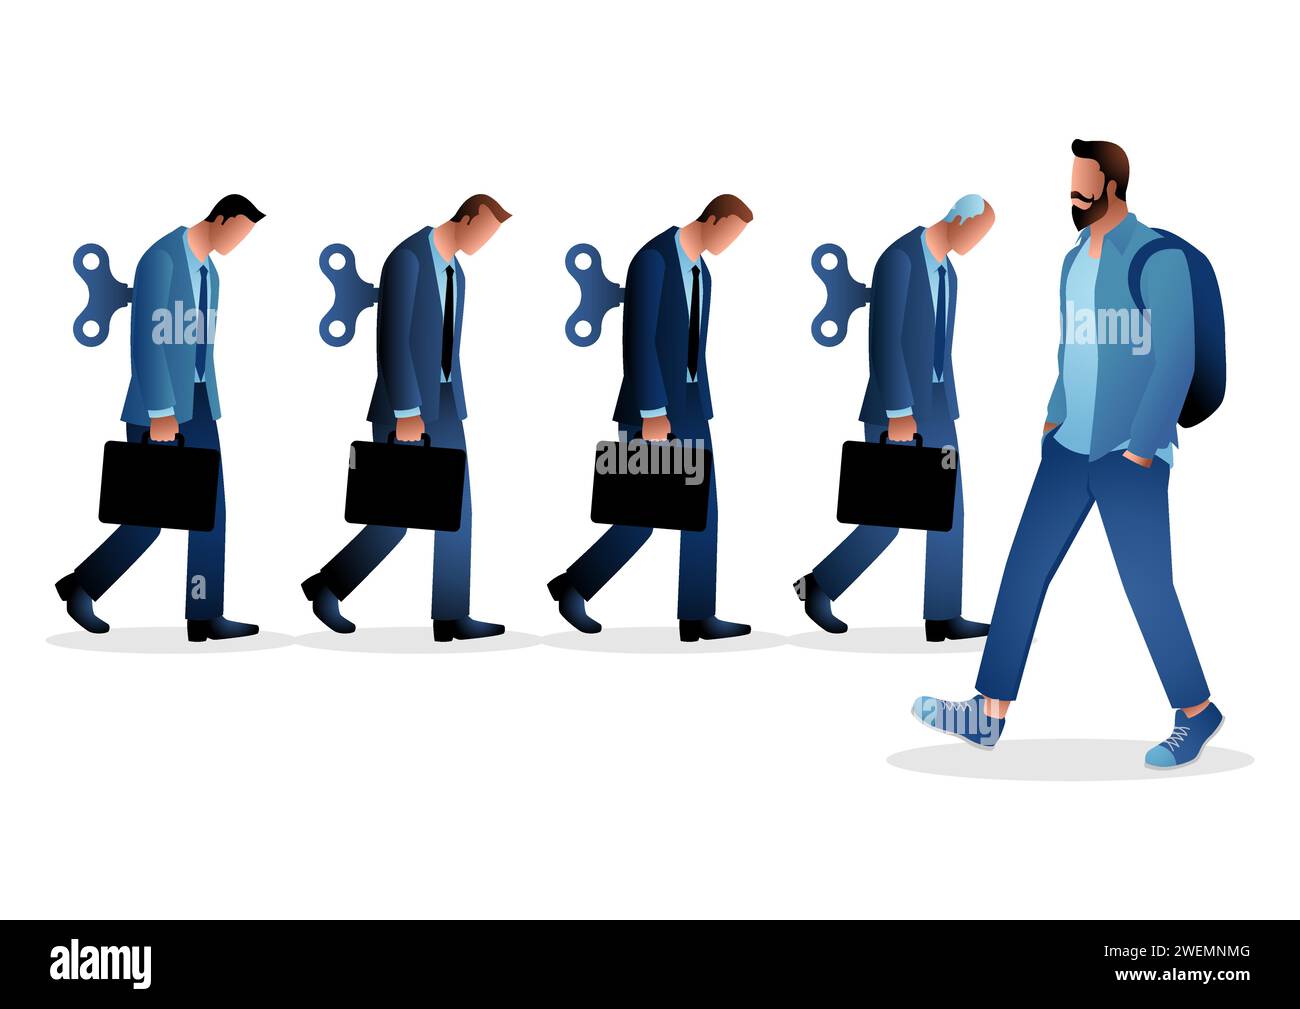 Illustration vectorielle de concept d'entreprise d'un jeune homme dans des vêtements décontractés marchant en face des hommes d'affaires avec des enrouleurs. Freelance, le libre arbitre concède Illustration de Vecteur